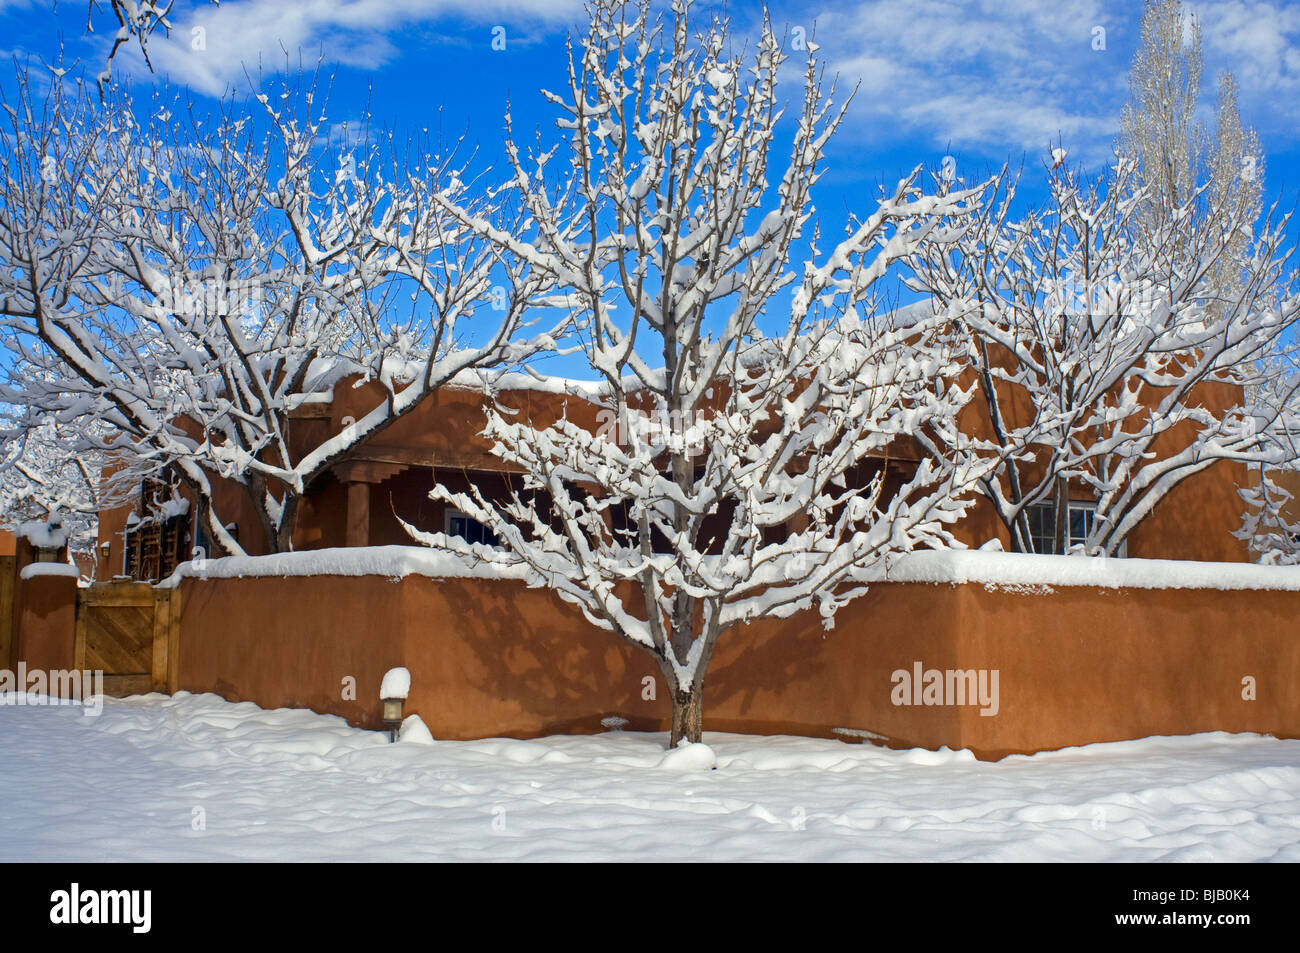 Adobe-Stil Haus im Winter in Santa Fe, New Mexico Stockfoto